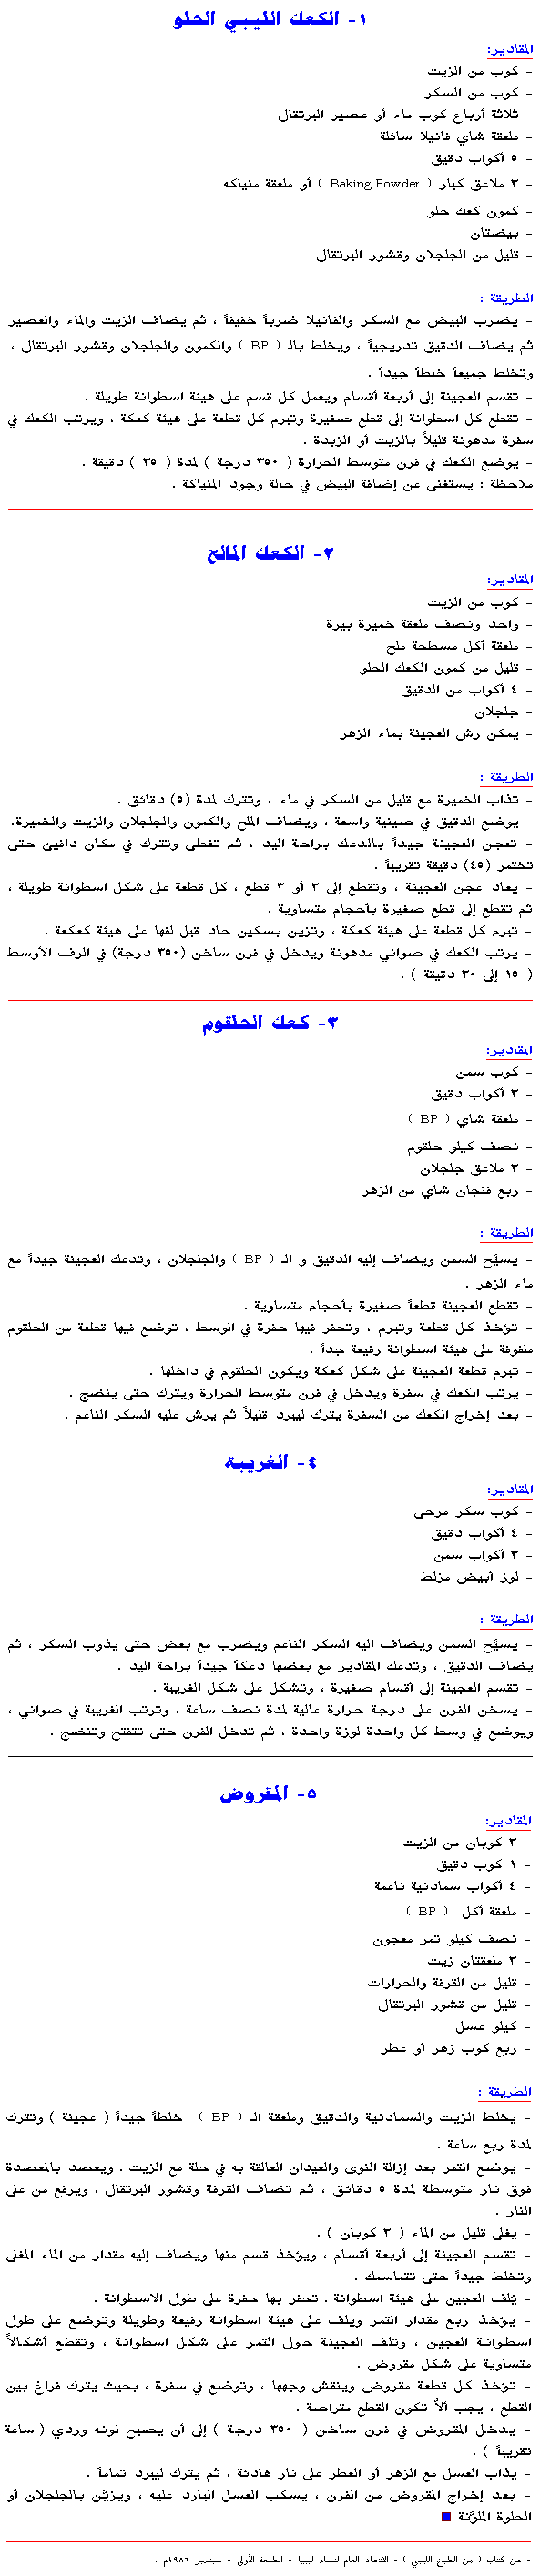 الكعك الليبي الحلو Kaak001